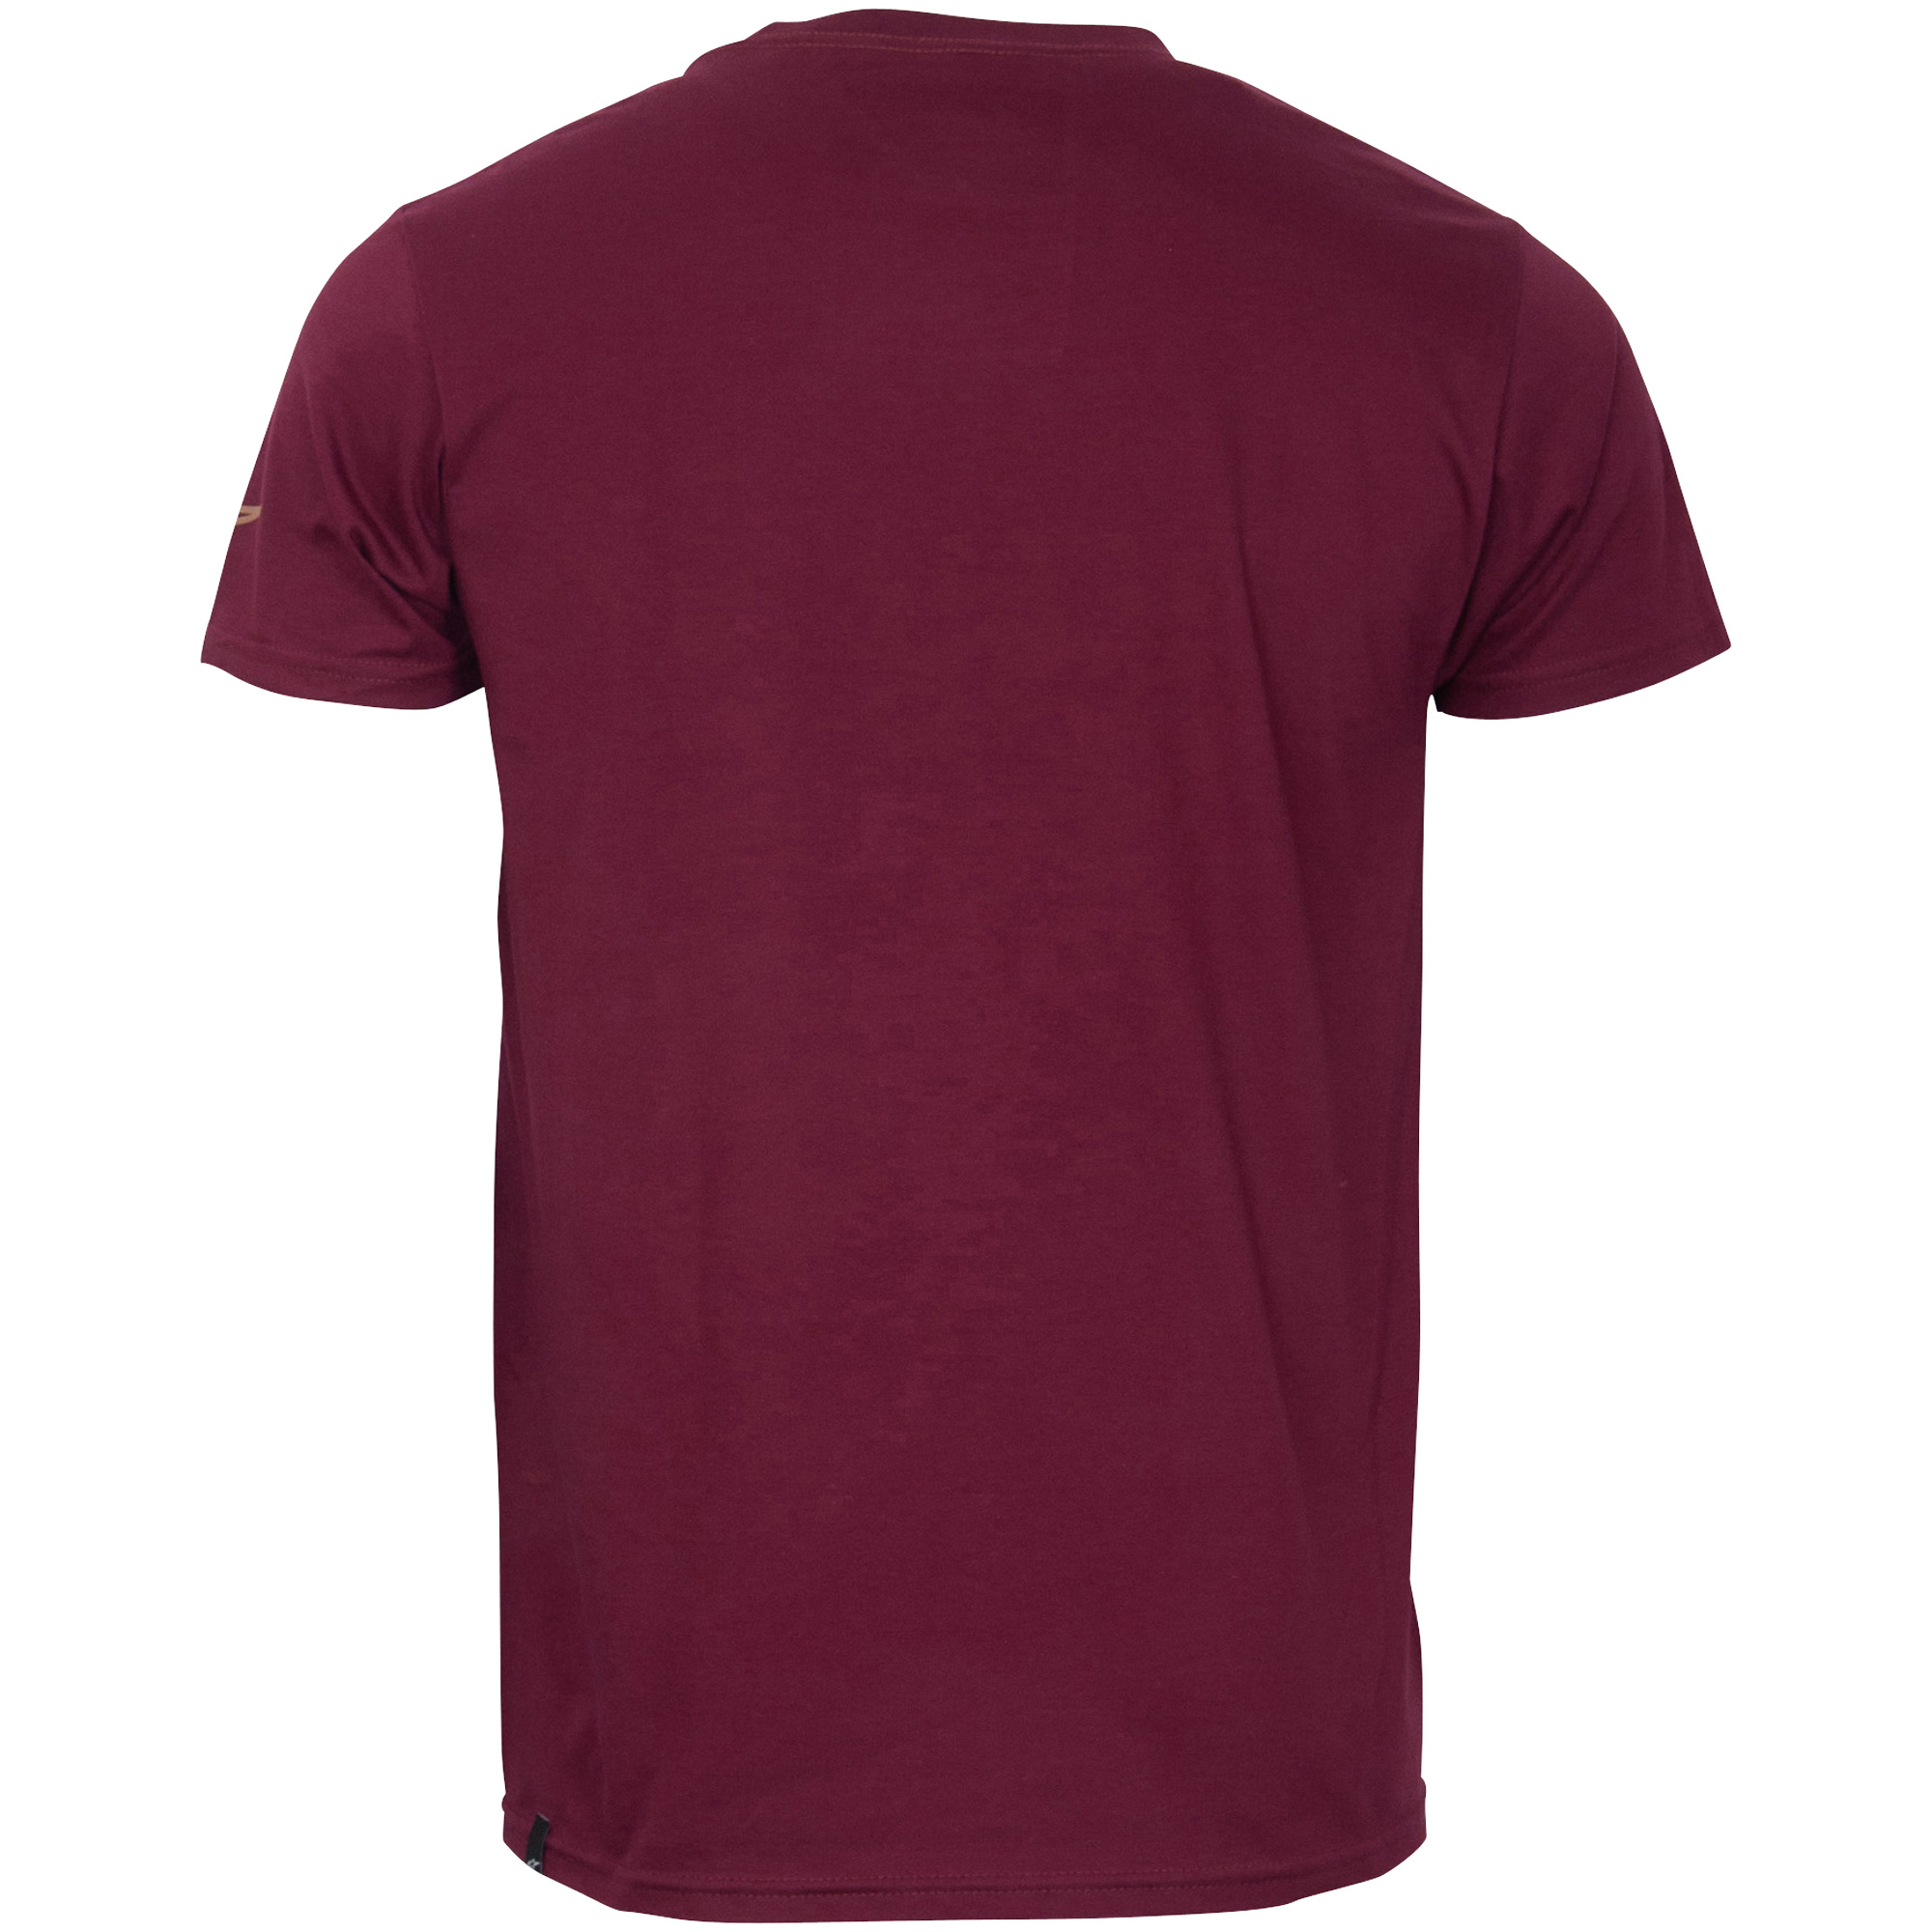 Alpinestars T-Shirt "Terra" - dunkelrot